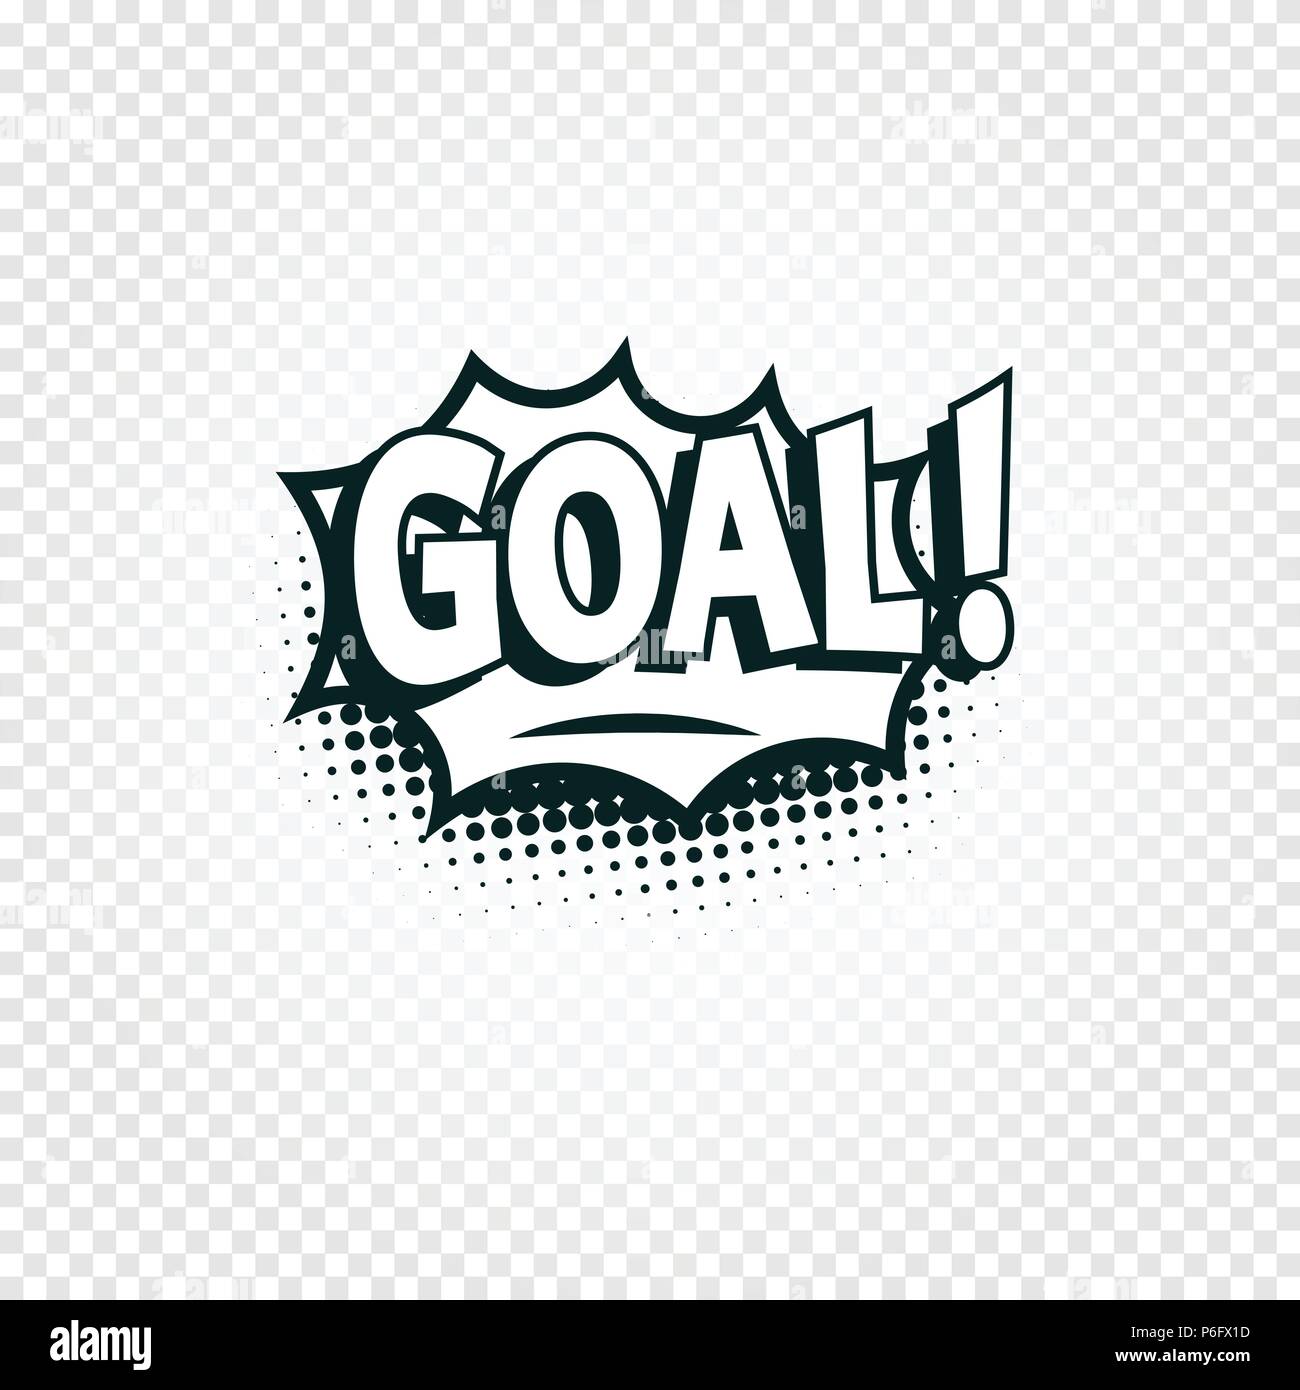 Goal Icona comics cloud con Ombreggiatura dei Mezzitoni, obiettivo gridare il testo in bolla, fumetti stilizzata sulla trasparenza dello sfondo. Calcio, calcio elemento di design, modello di logo, isolato illustrazione. Illustrazione Vettoriale